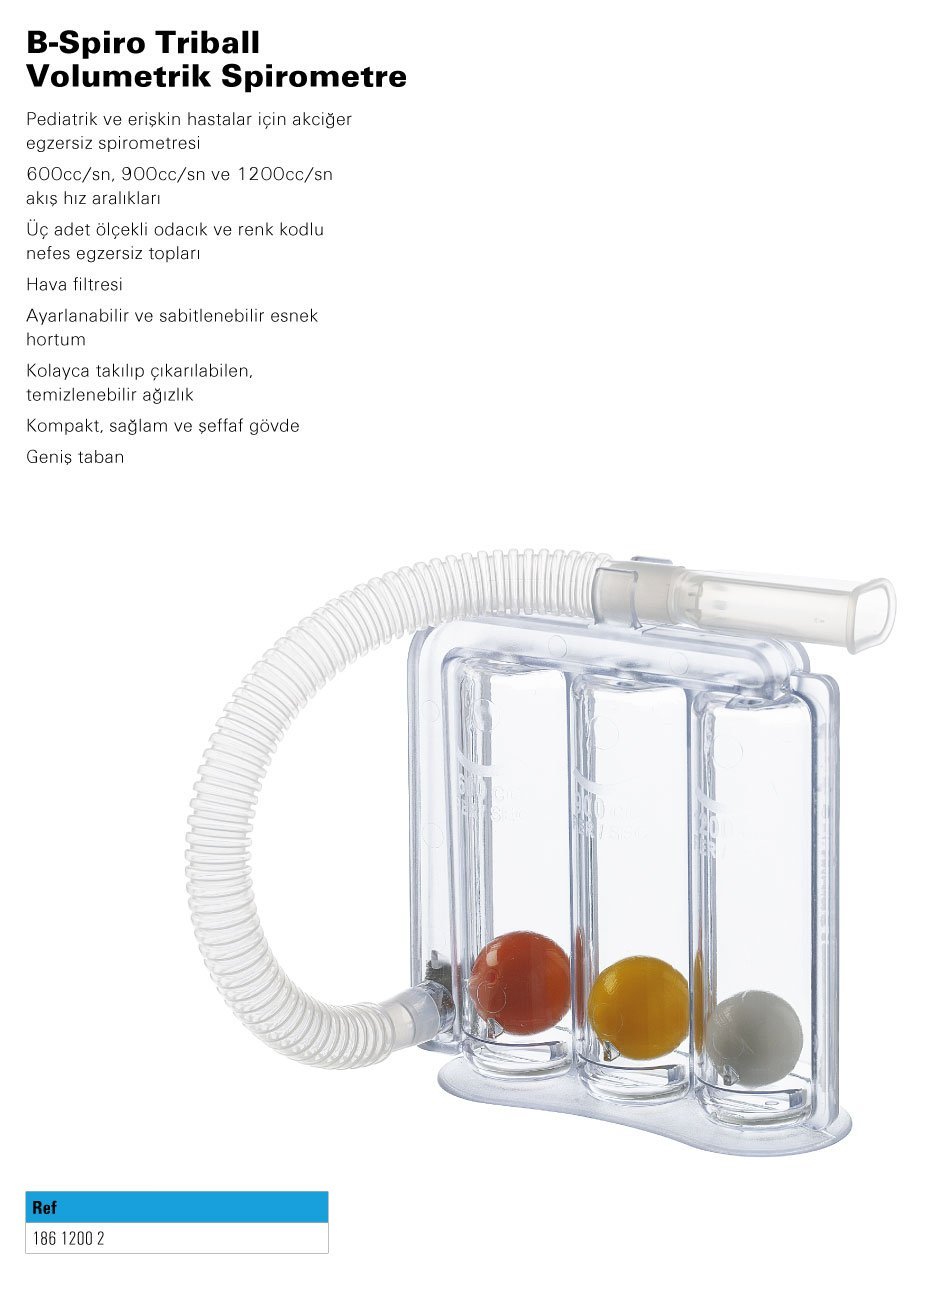 spirometre-3-toplu